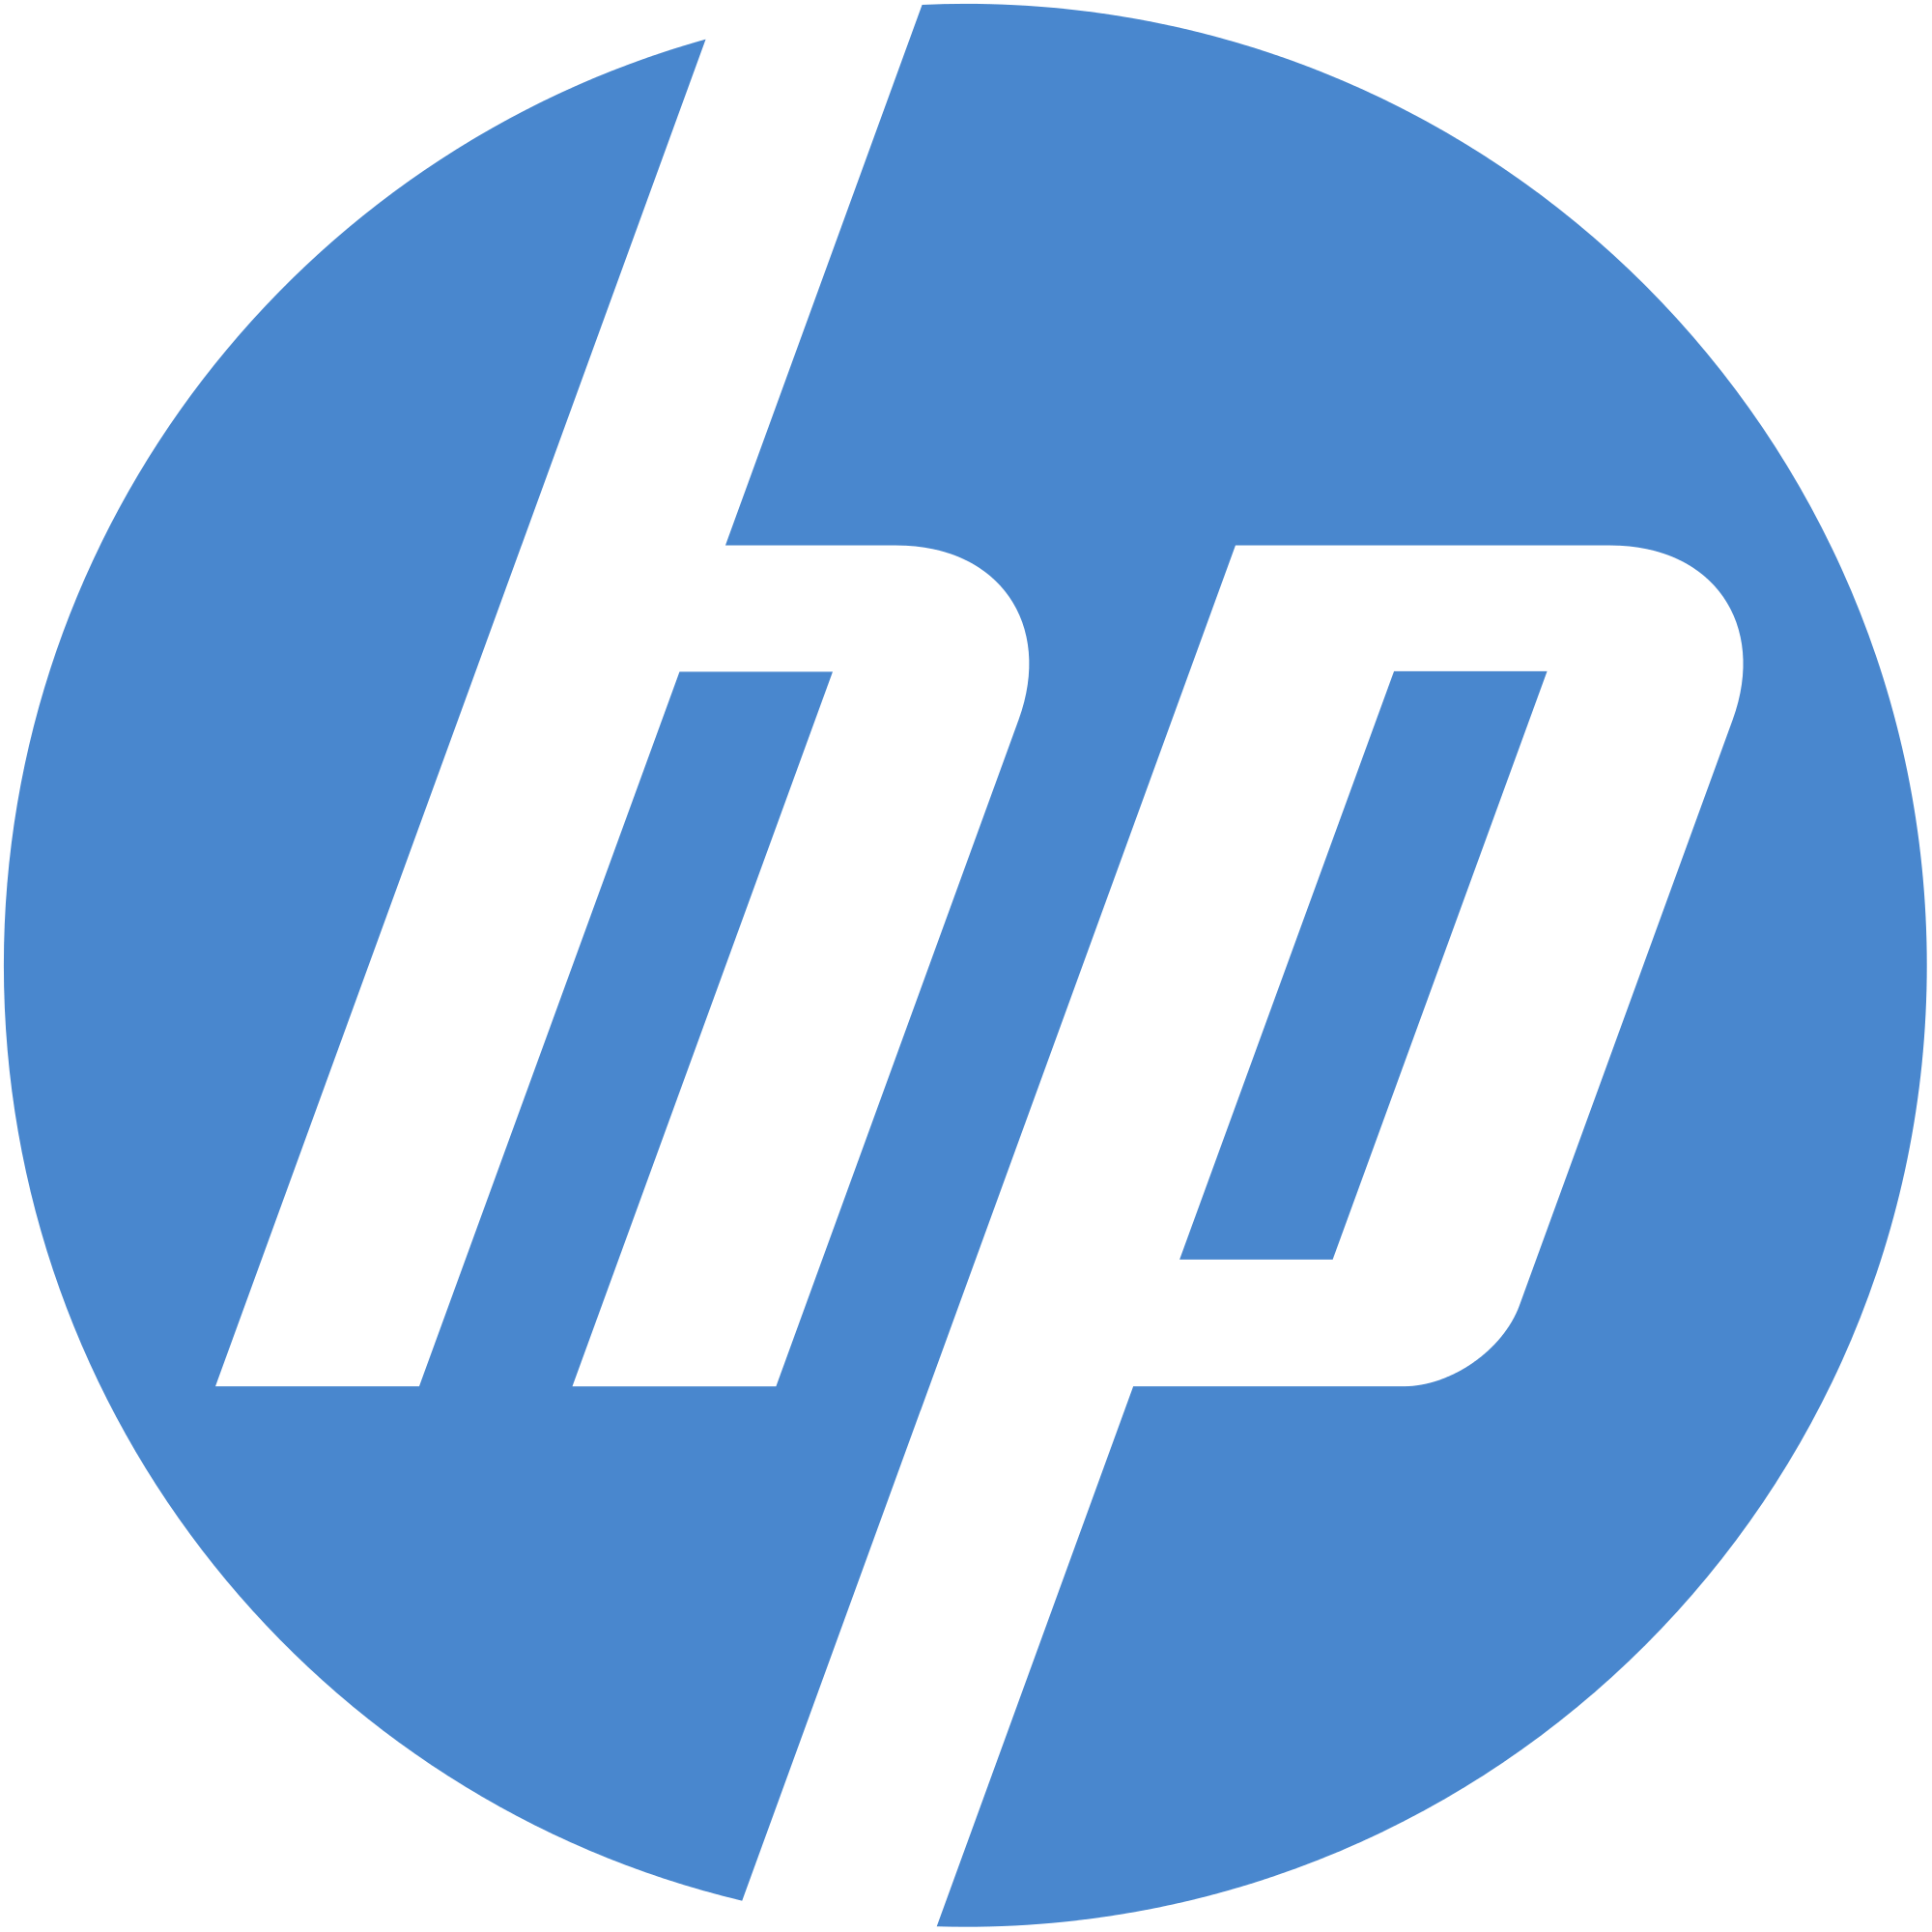 Hewlett Packard Logo